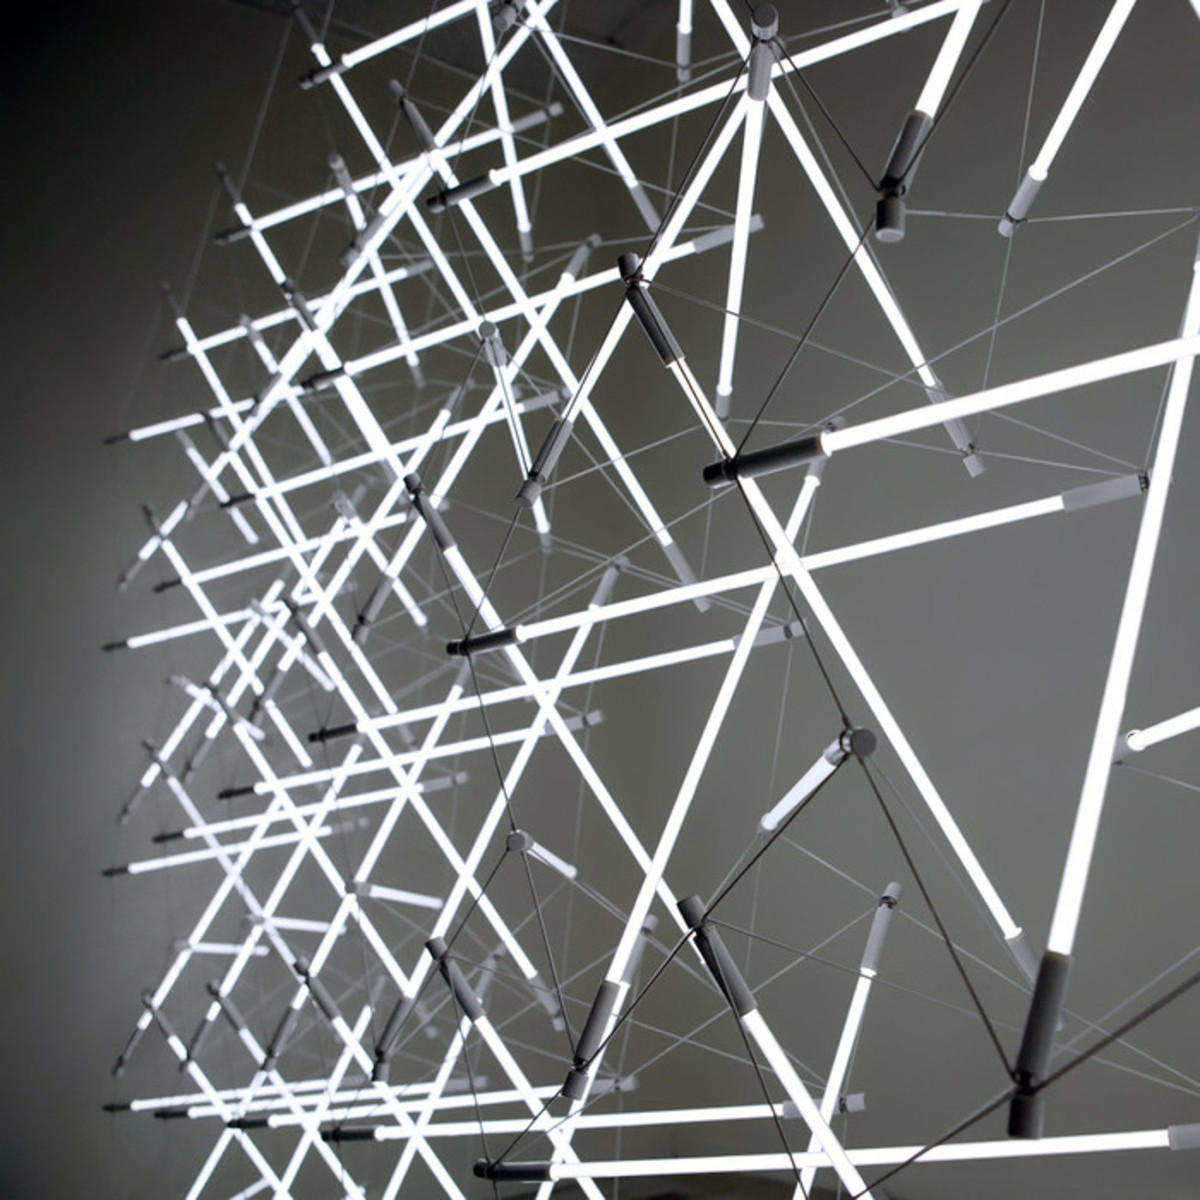 Tensegrity - strukturalne oświetlenie - laureat zlotej nagrody w konkursie A'Design Awards, autor: Michal Maciej Bartosik, fot.: Alex Earl Gray, 2013